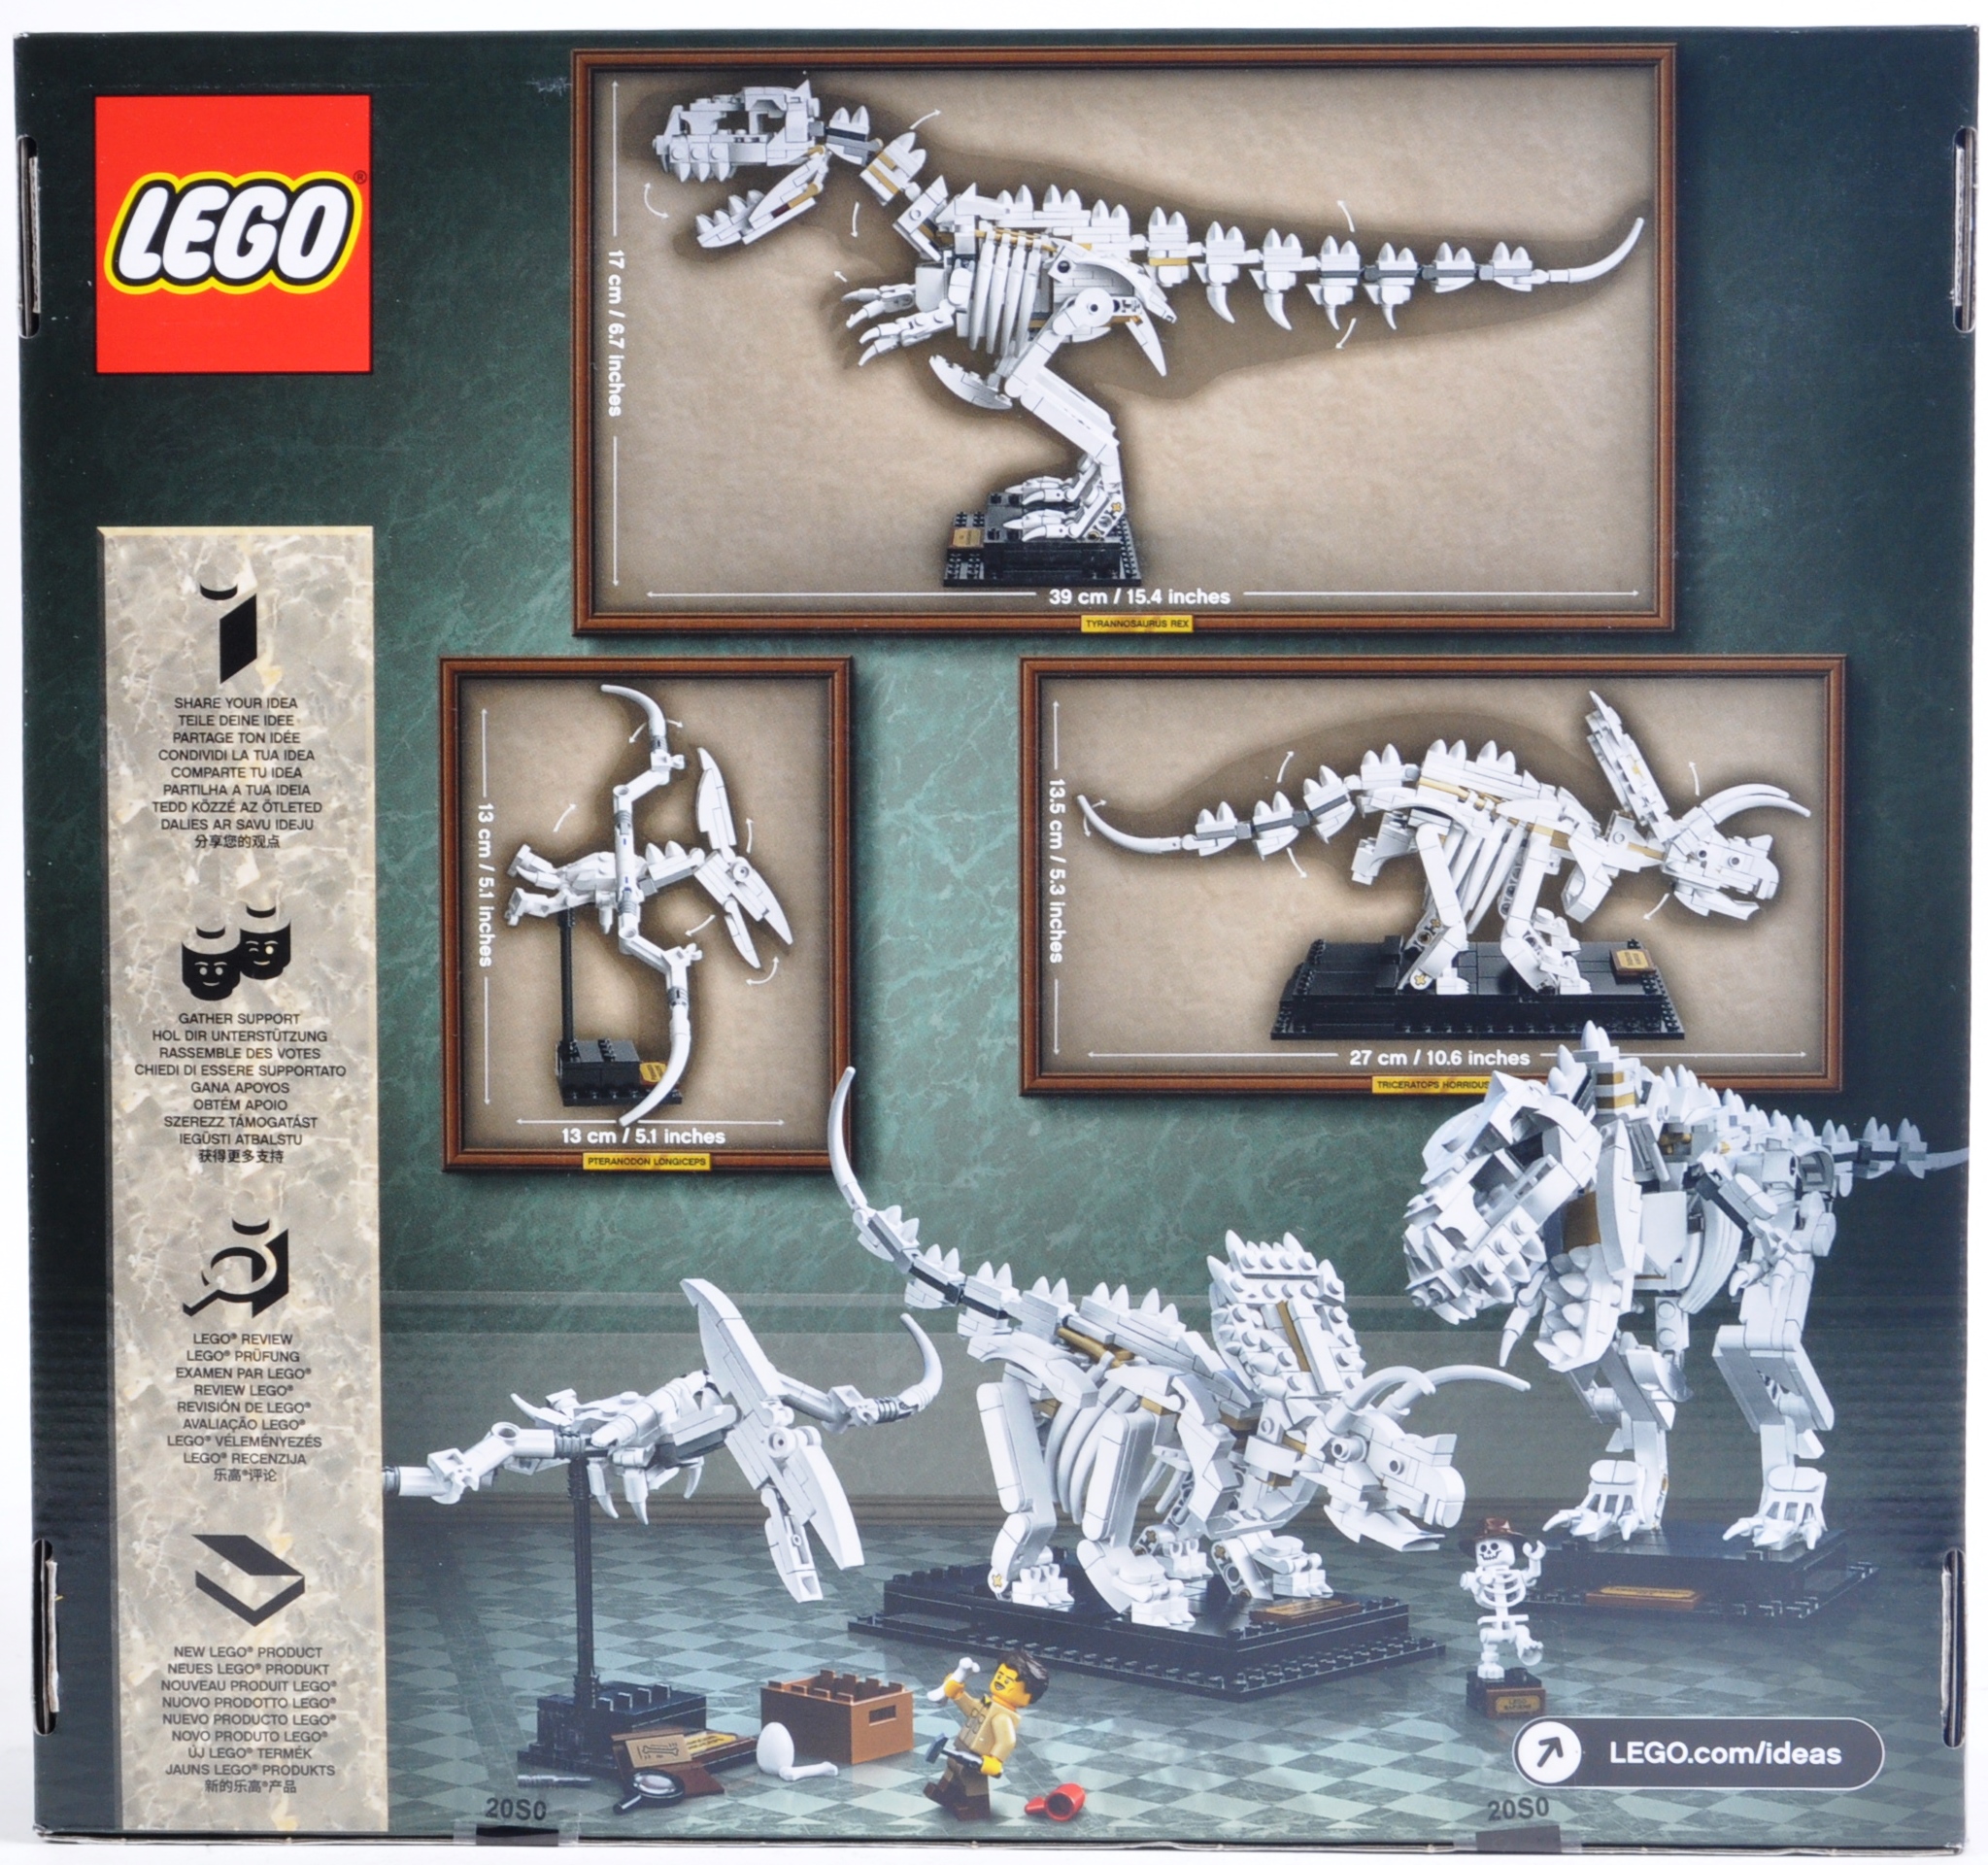 LEGO SET - LEGO IDEAS - 21320 - DINOSAUR FOSSILS - Image 2 of 4